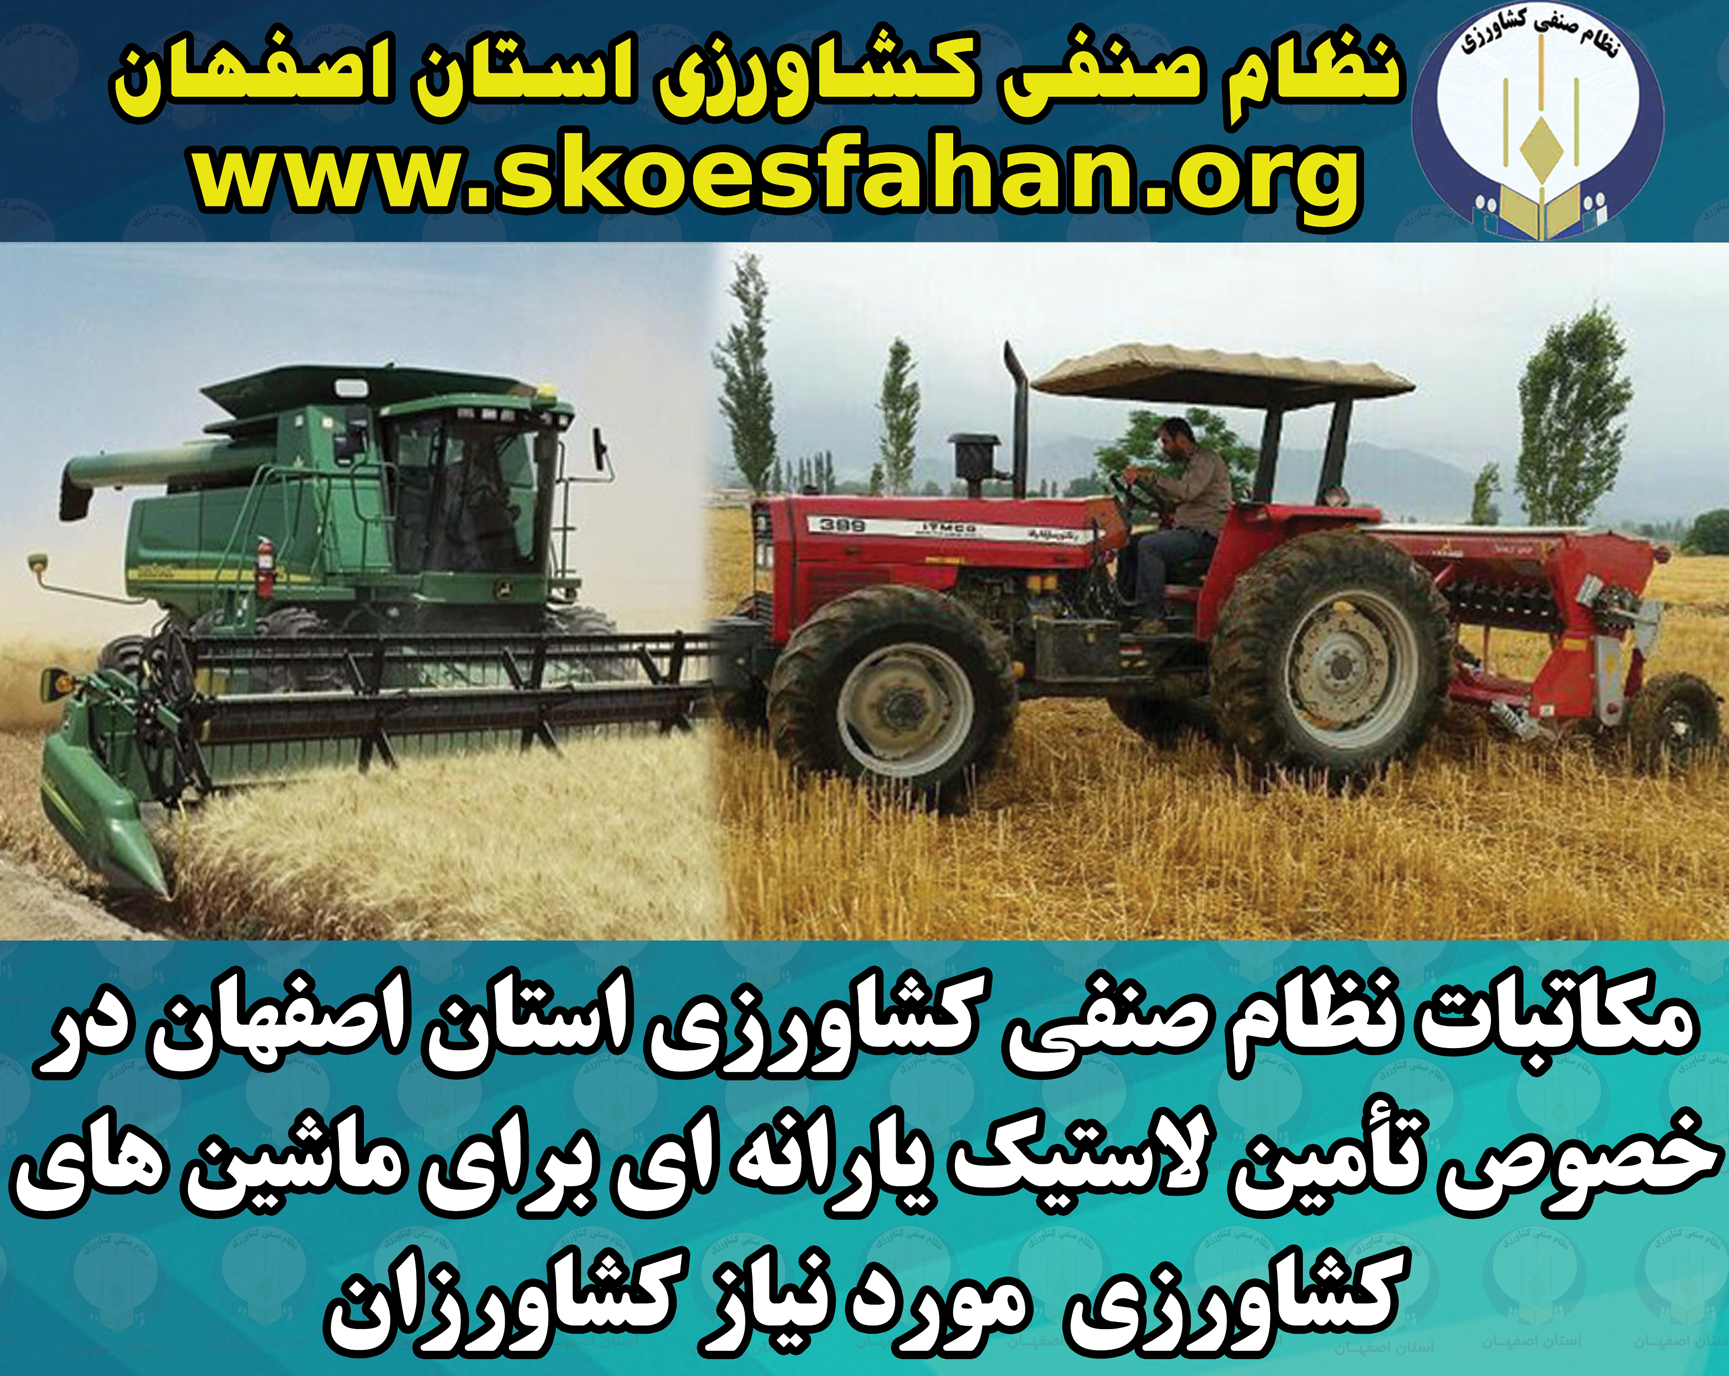 مکاتبات نظام صنفی کشاورزی استان اصفهان در خصوص تأمین لاستیک یارانه ای برای ماشین های کشاورزی  مورد نیاز کشاورزان